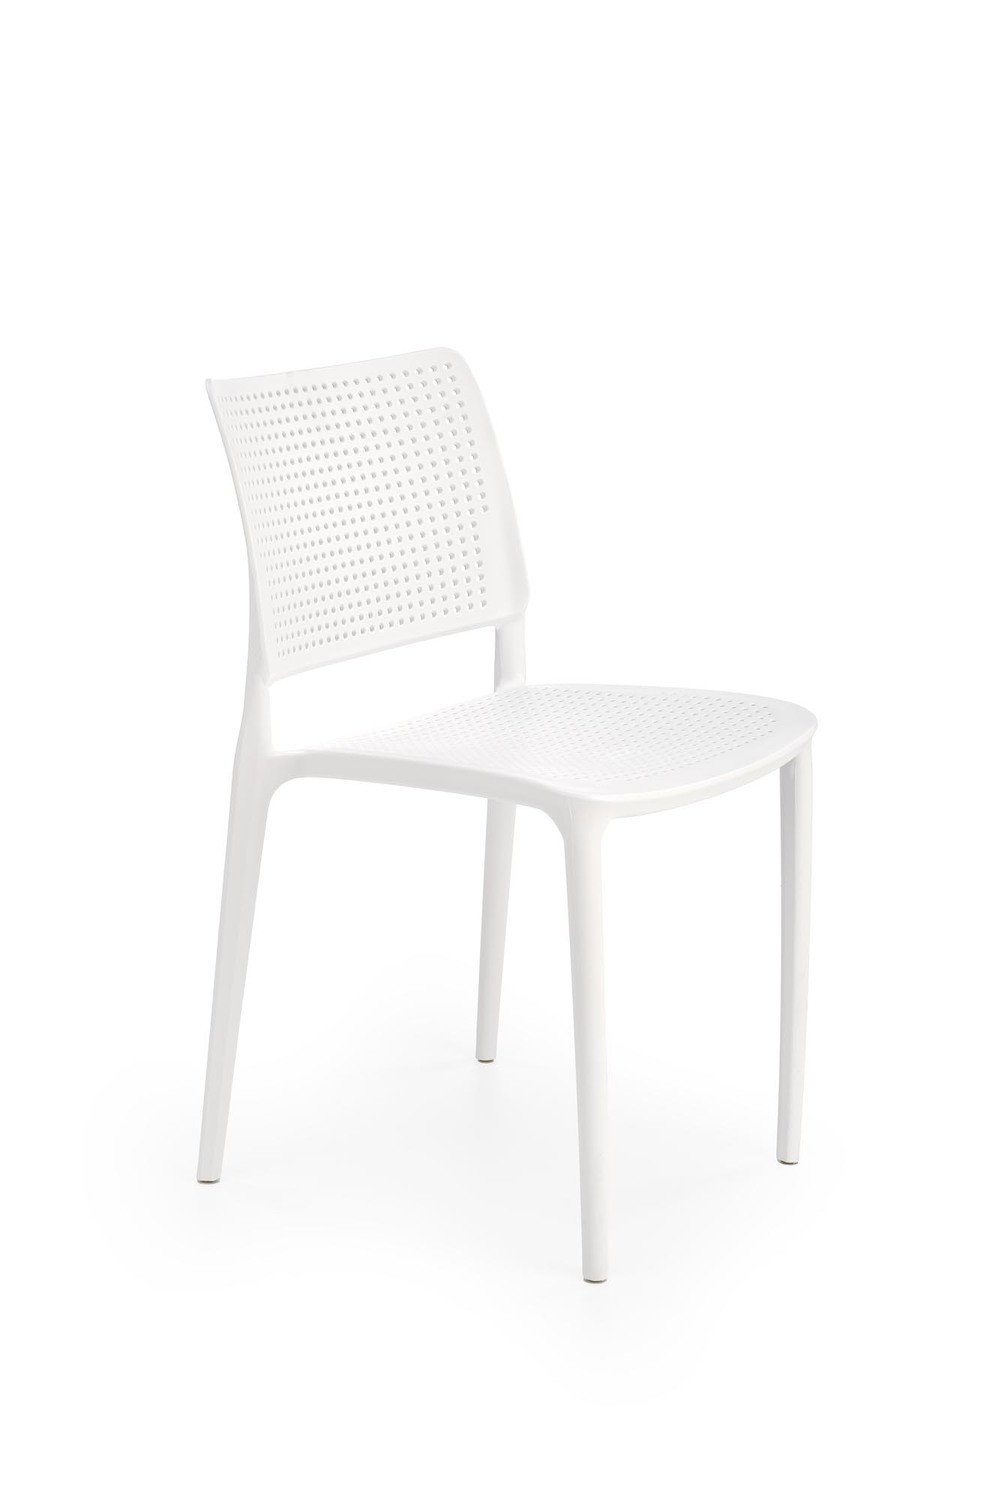 Комплект обеденный HALMAR стол TIAGO KWADRAT + 2 серых и 2 белых кресла K514 